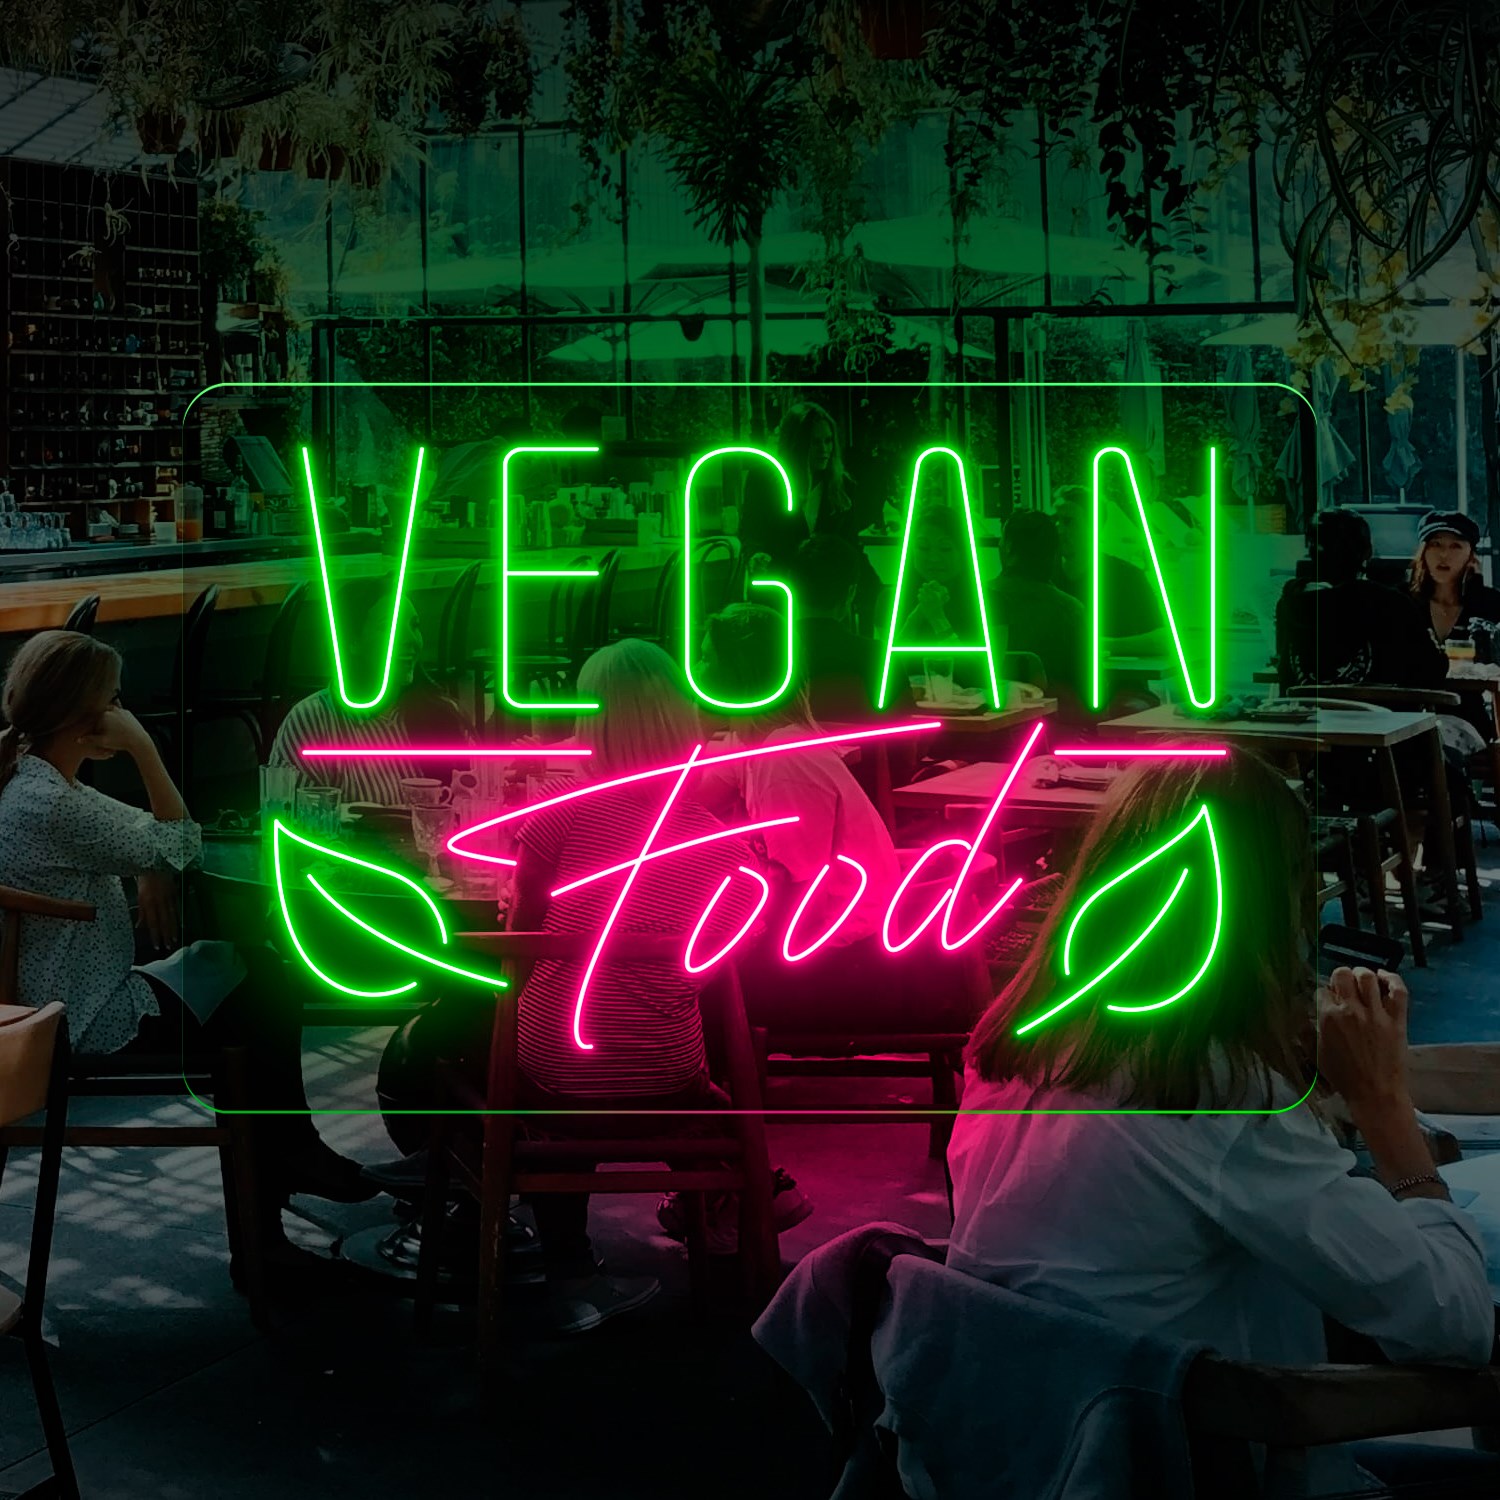 Bild von Neon für Lager "Vegan Food"